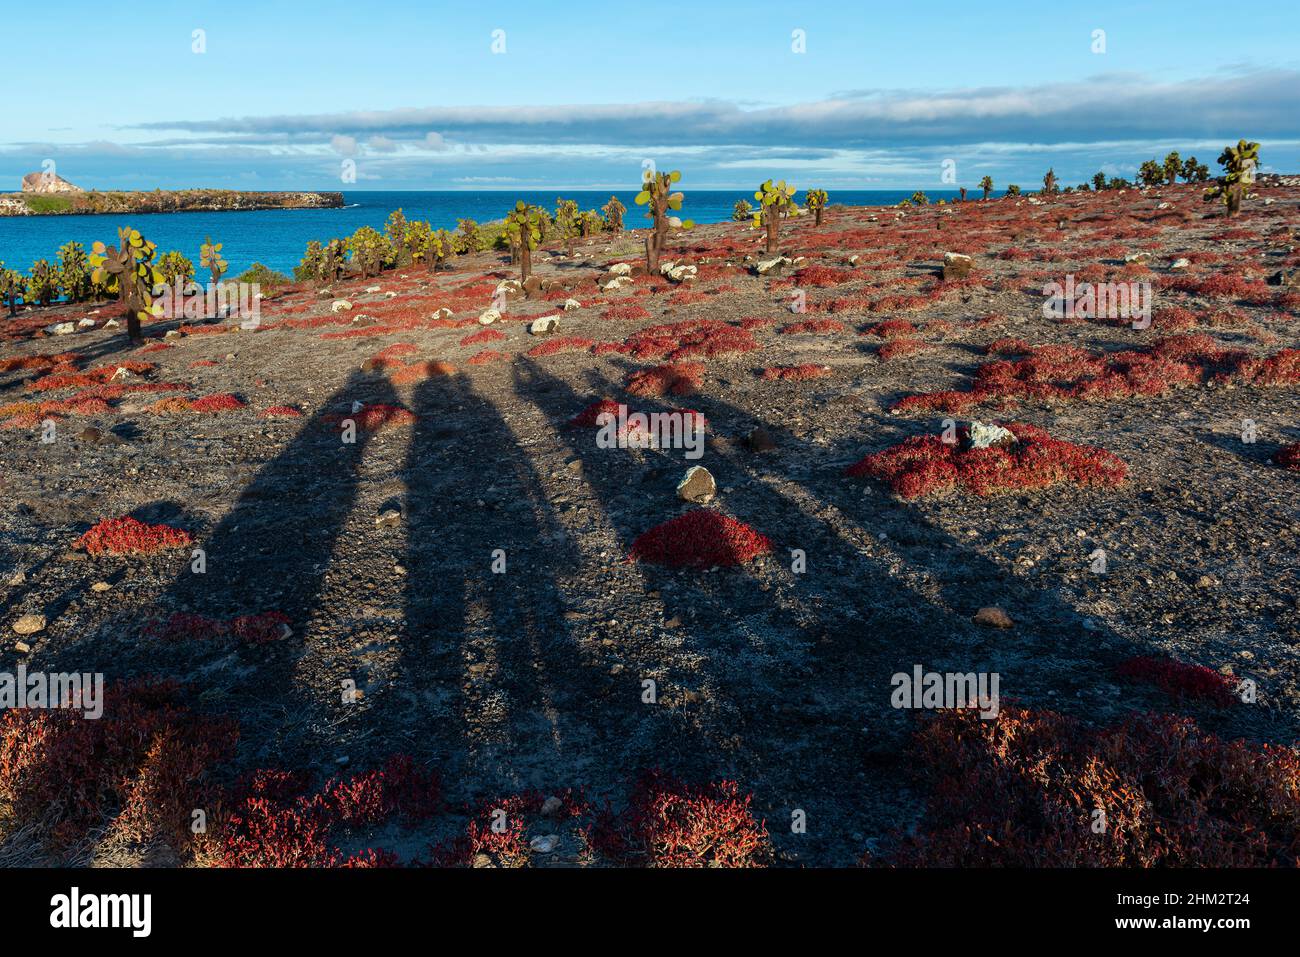 Sombras turísticas en el paisaje de la isla de Galápagos South Plaza al atardecer con cactus de pera espinosa y planta roja de sesuvium, Parque Nacional Galápagos, Ecuador. Foto de stock